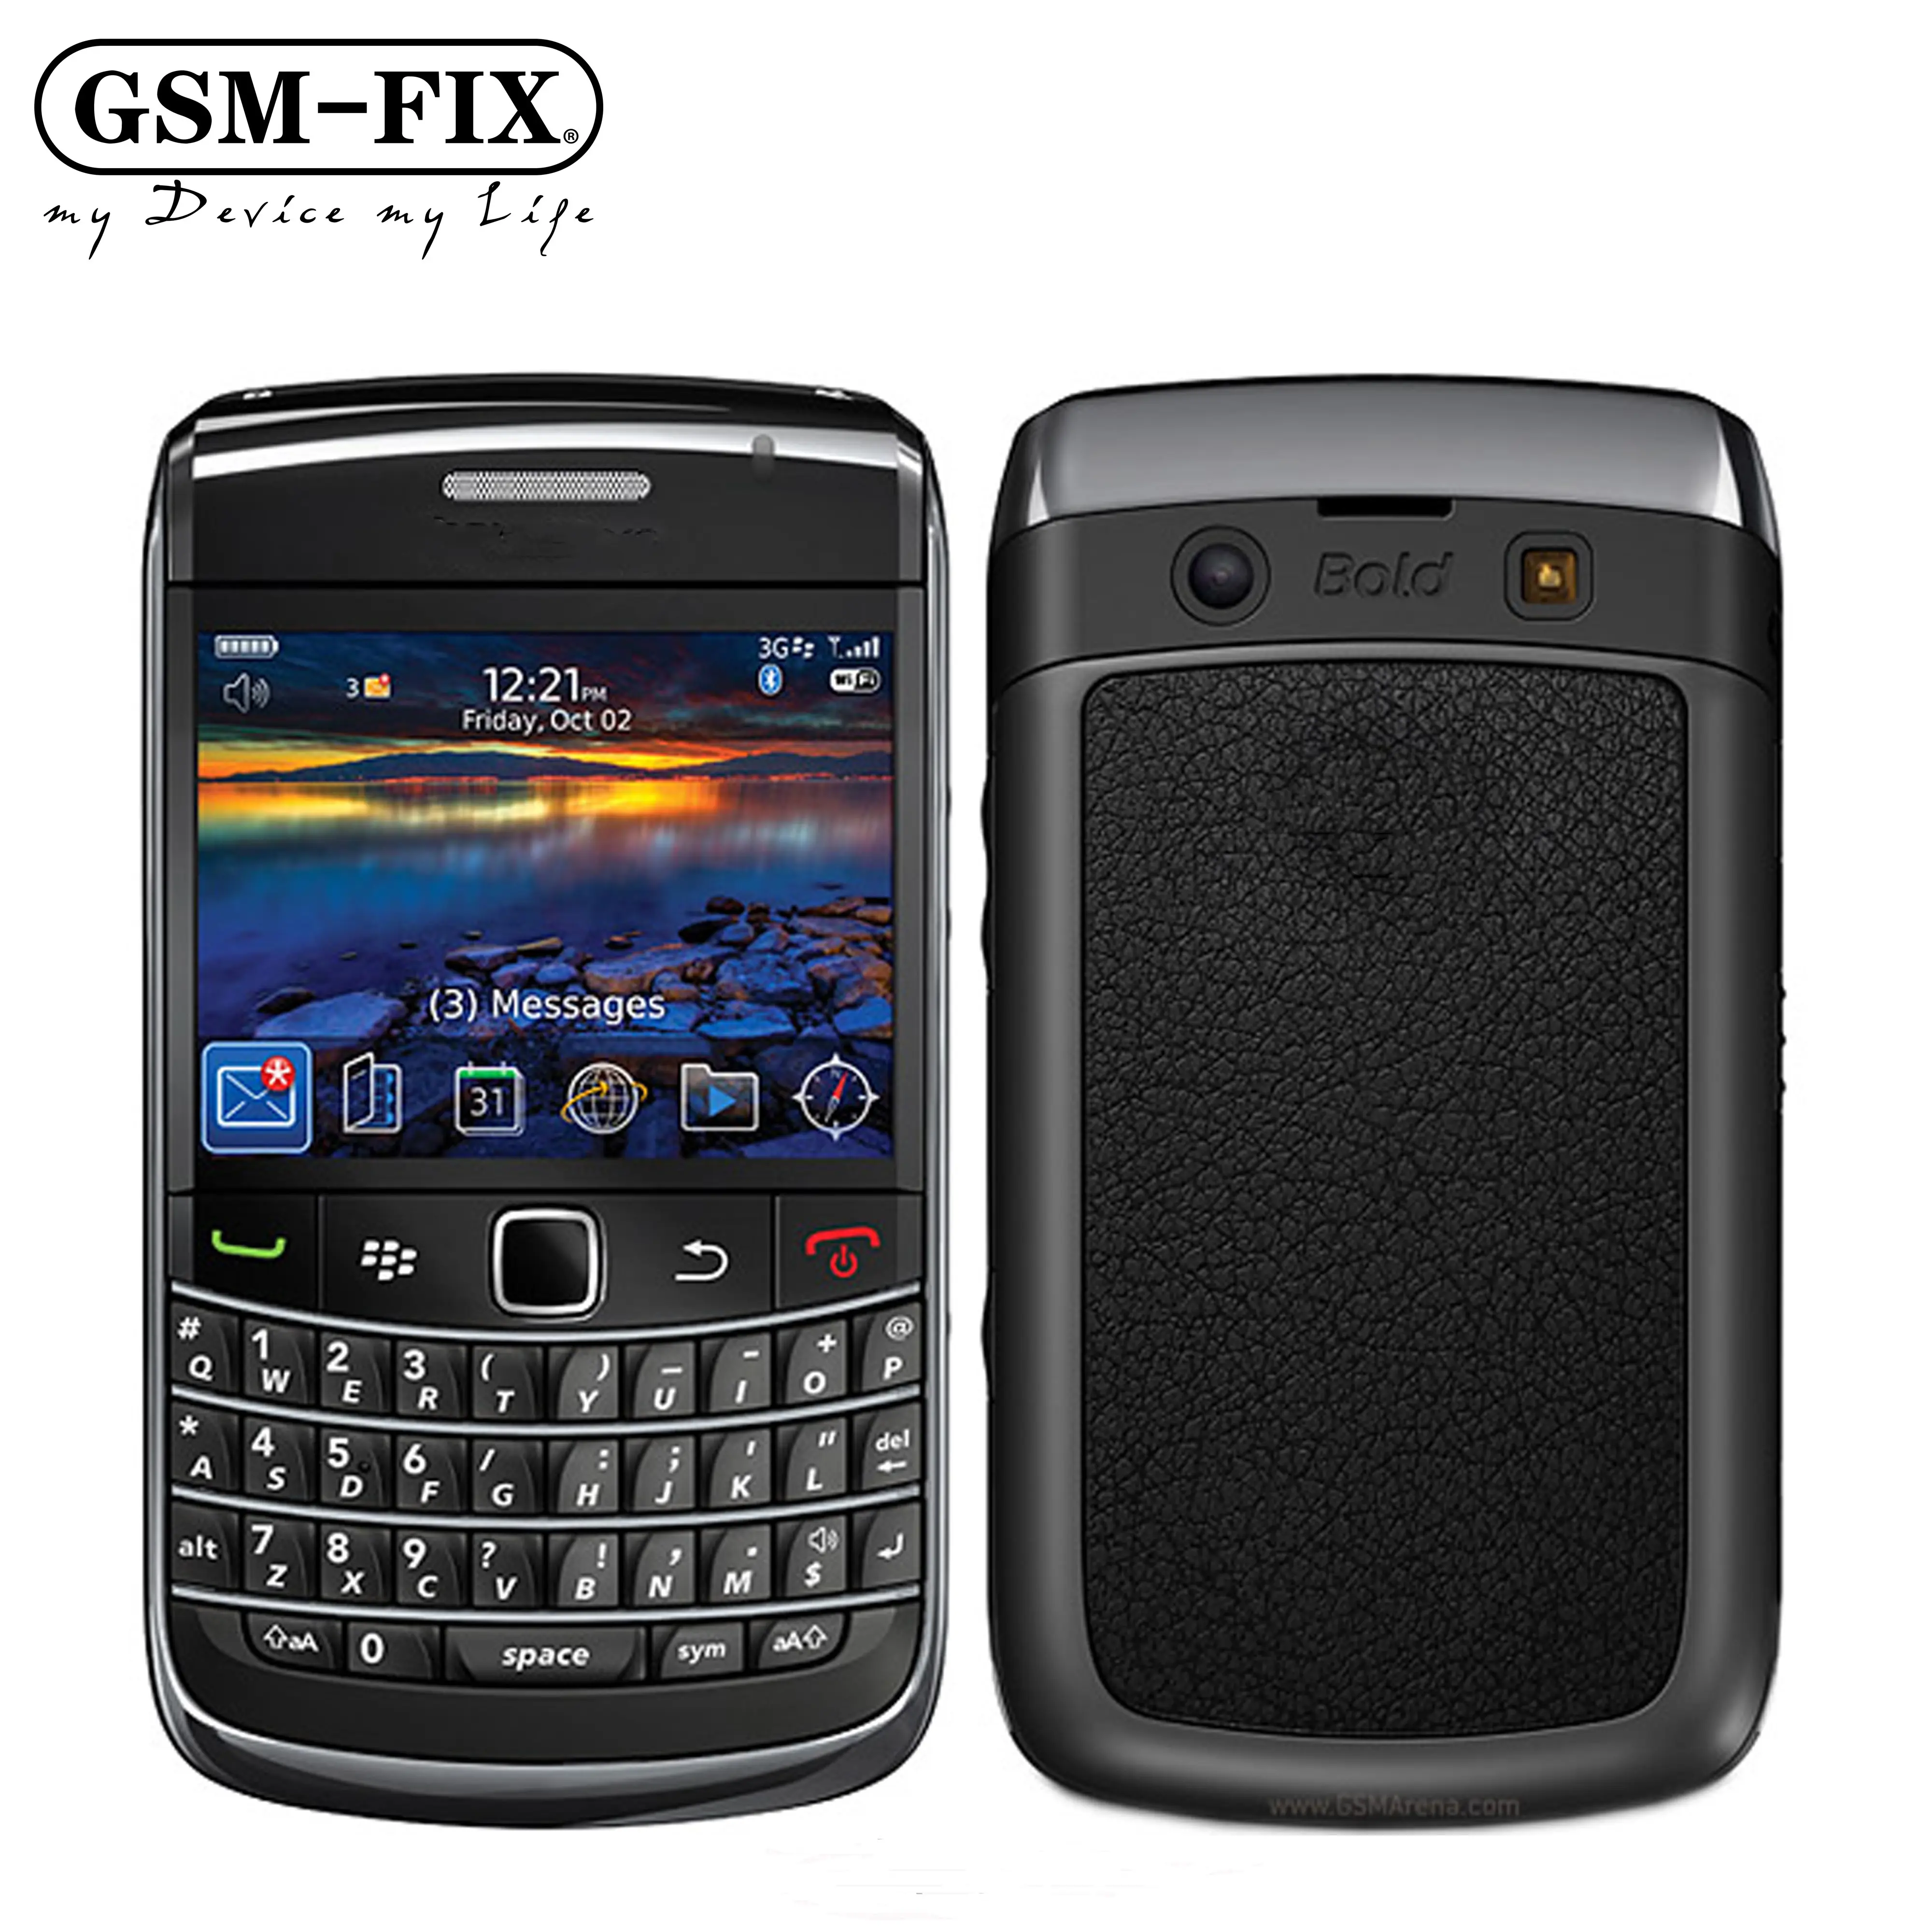 GSM-FIX per Blackberry Bold 9700 2.44 "3G 3.15MP 256MB RAM QWERTY tastiera telefoni cellulari sbloccati